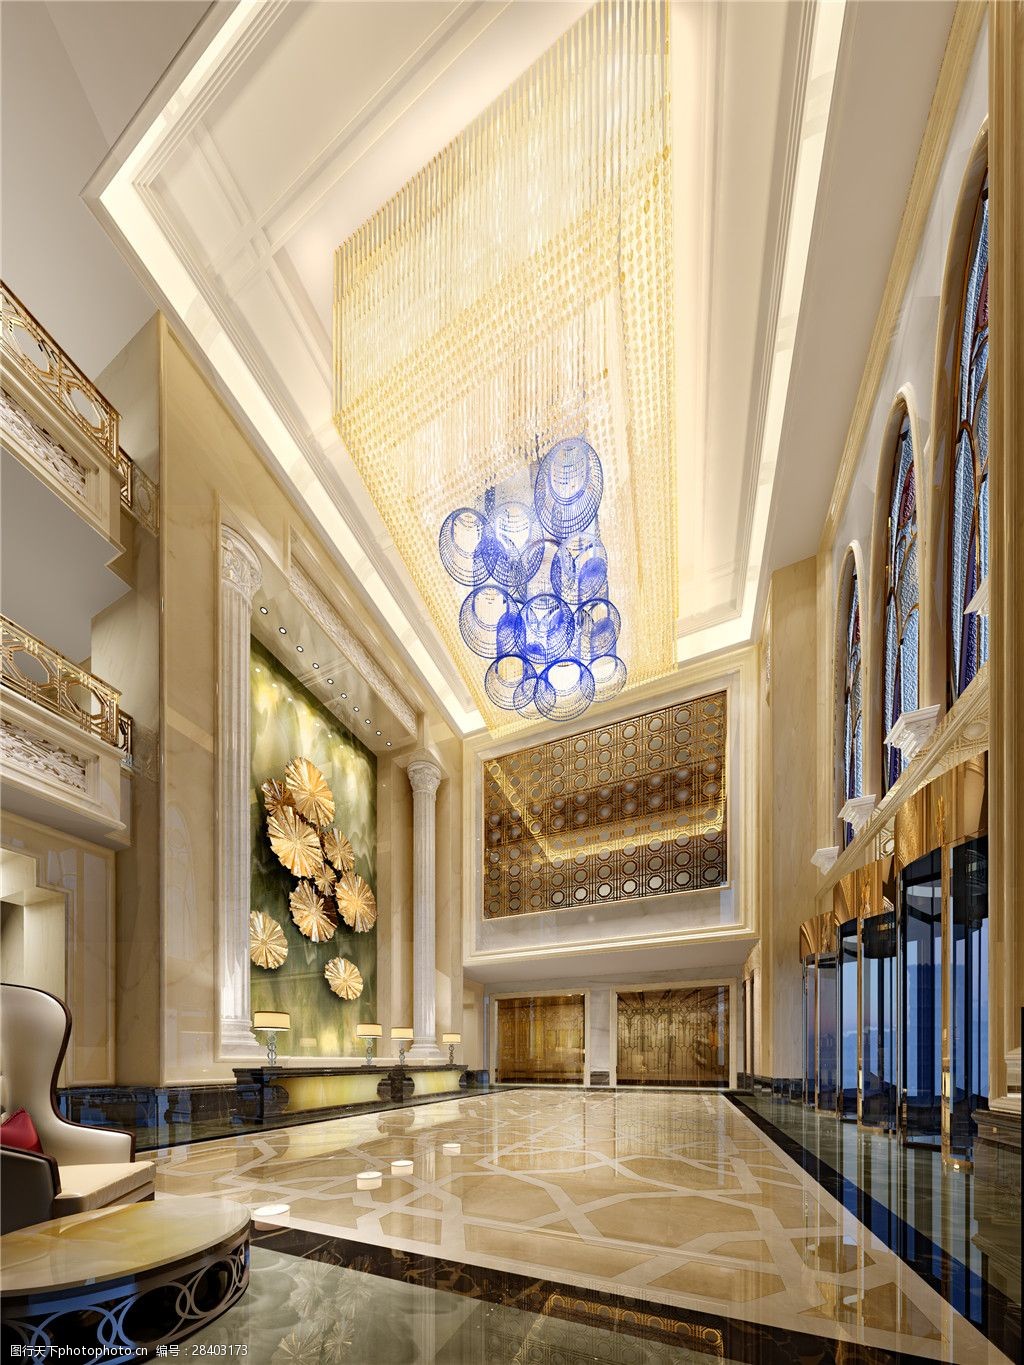 酒店装修 大厅装修 瓷砖地板 蓝色水晶灯 金色背景墙